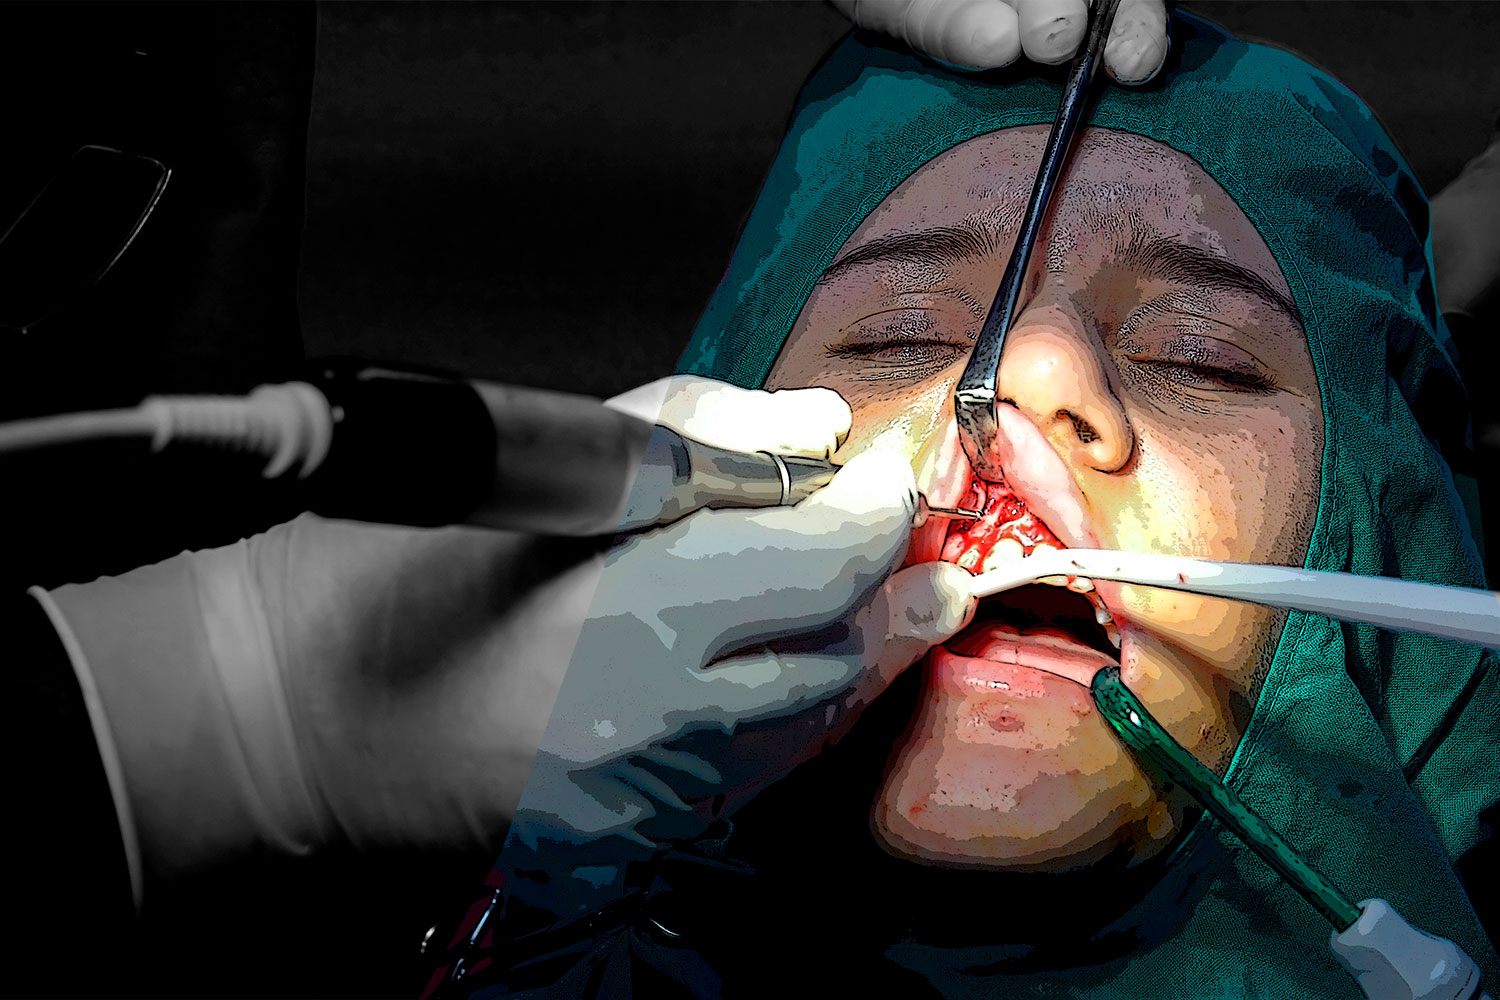 Cirugía Oral y Maxilofacial es la tercera especialidad MIR que agota sus plazas de formación. Foto: LOURDES ESPARZA. 